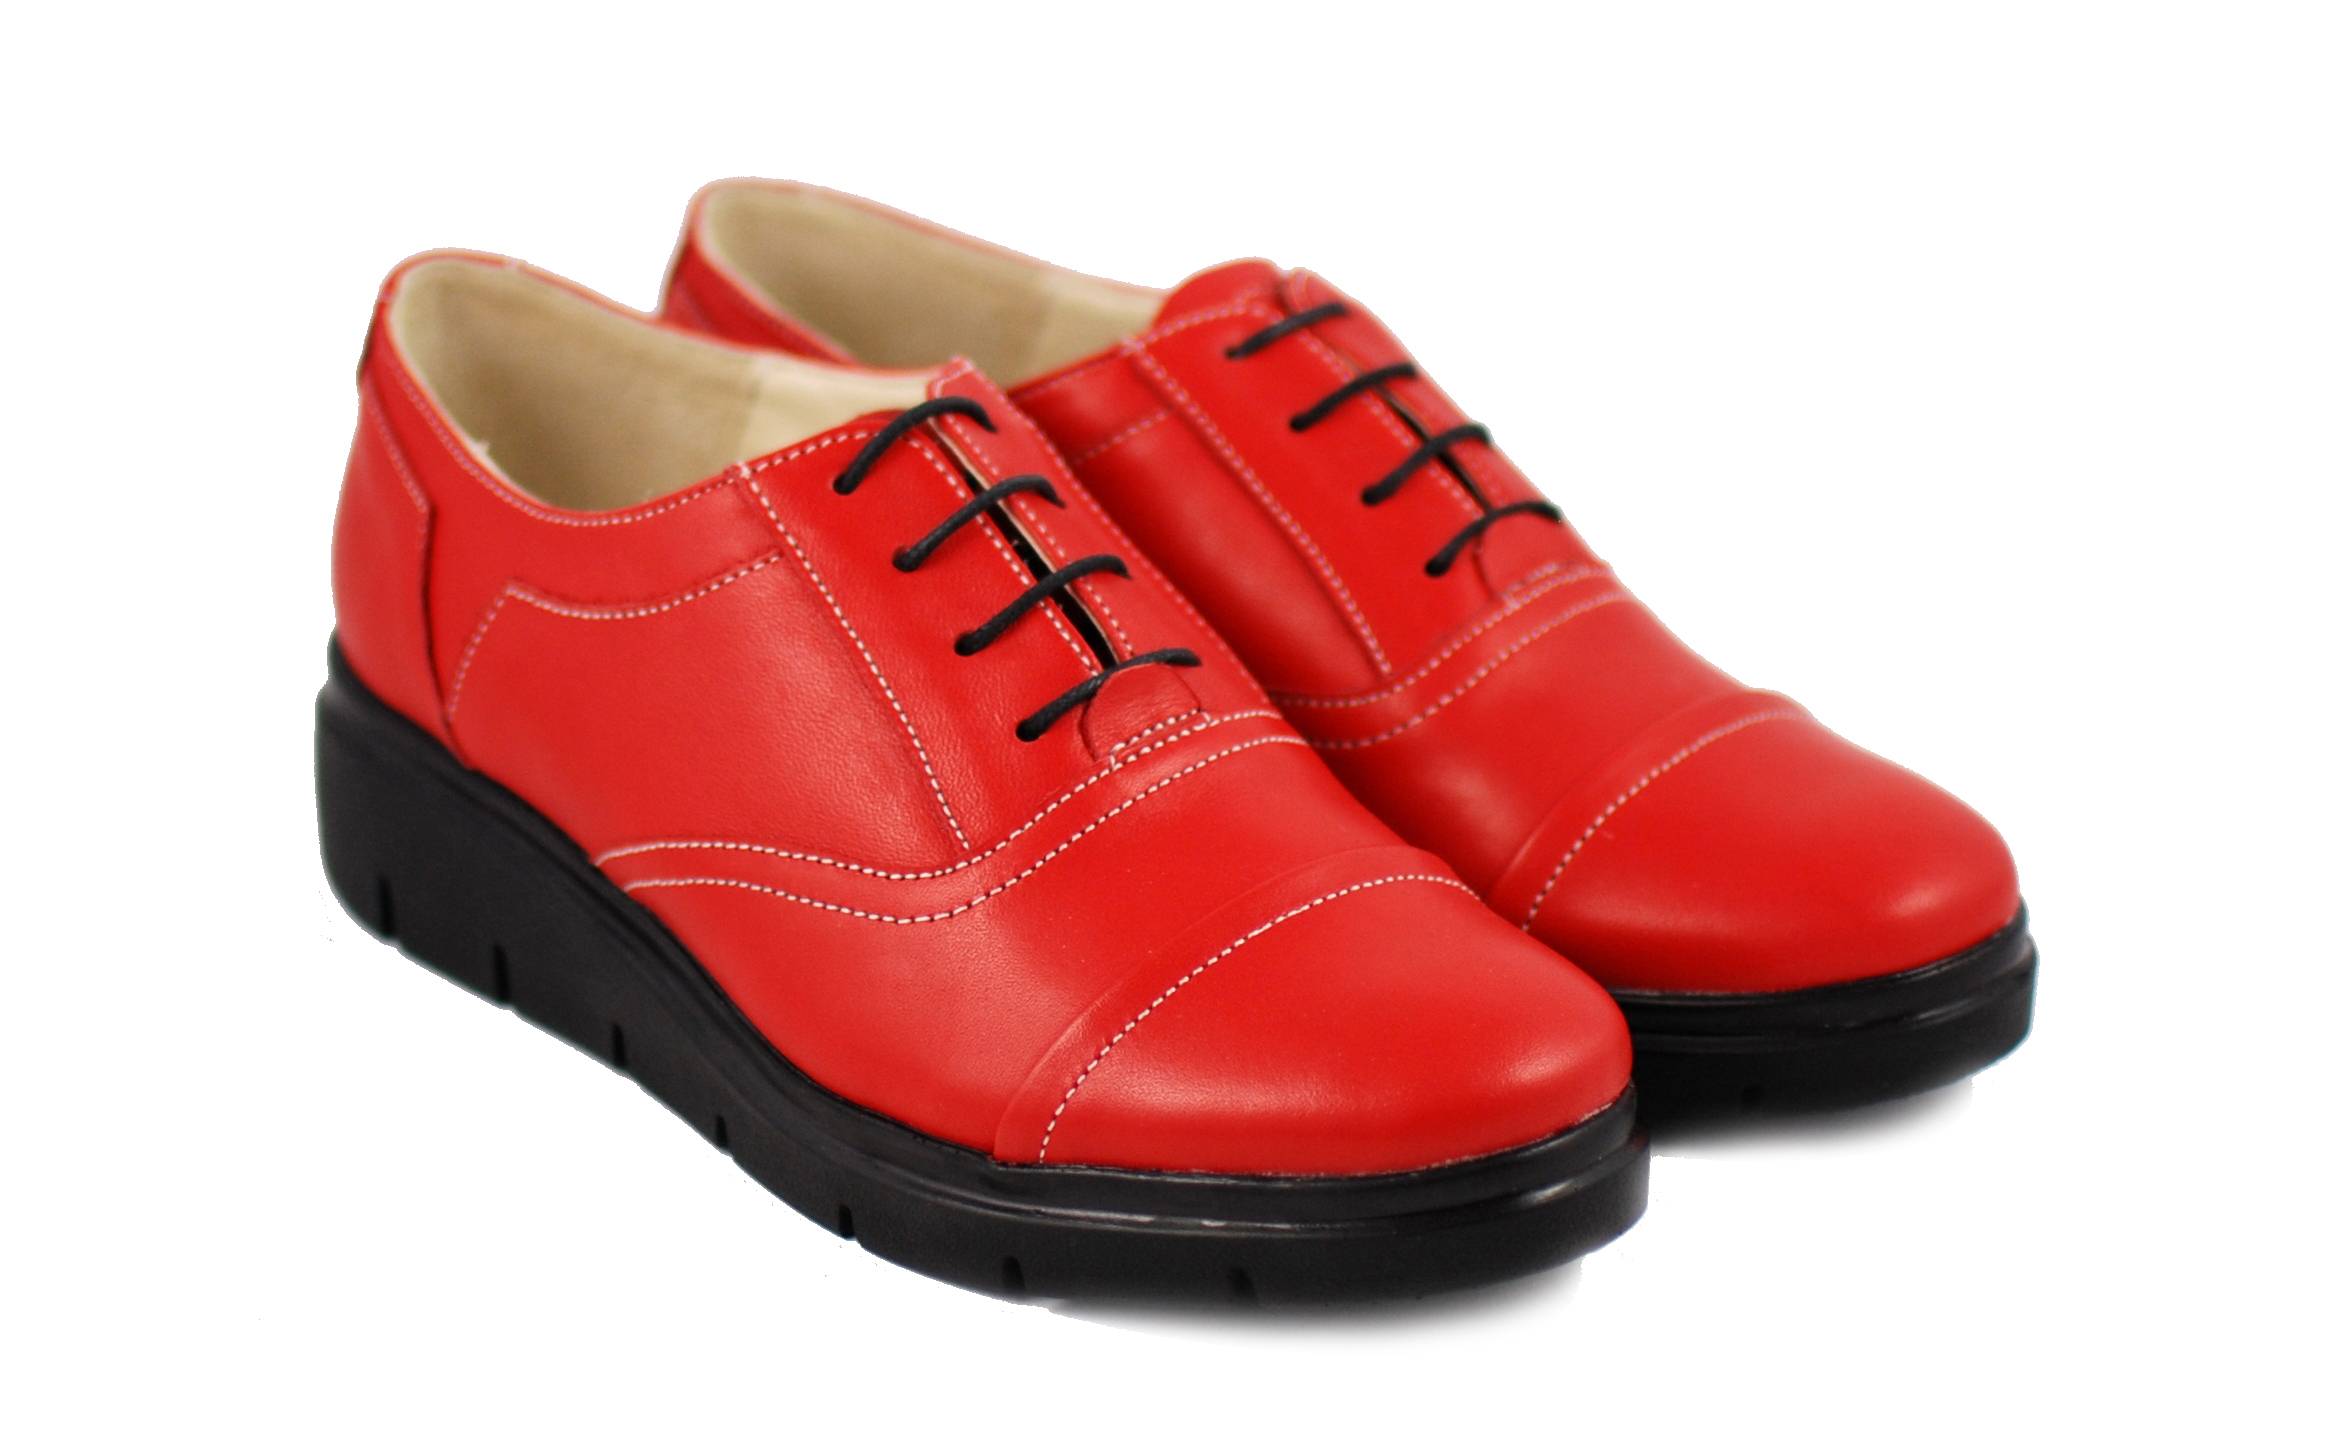 Pantofi dama rosii din piele naturala, cu platforme RUT2R